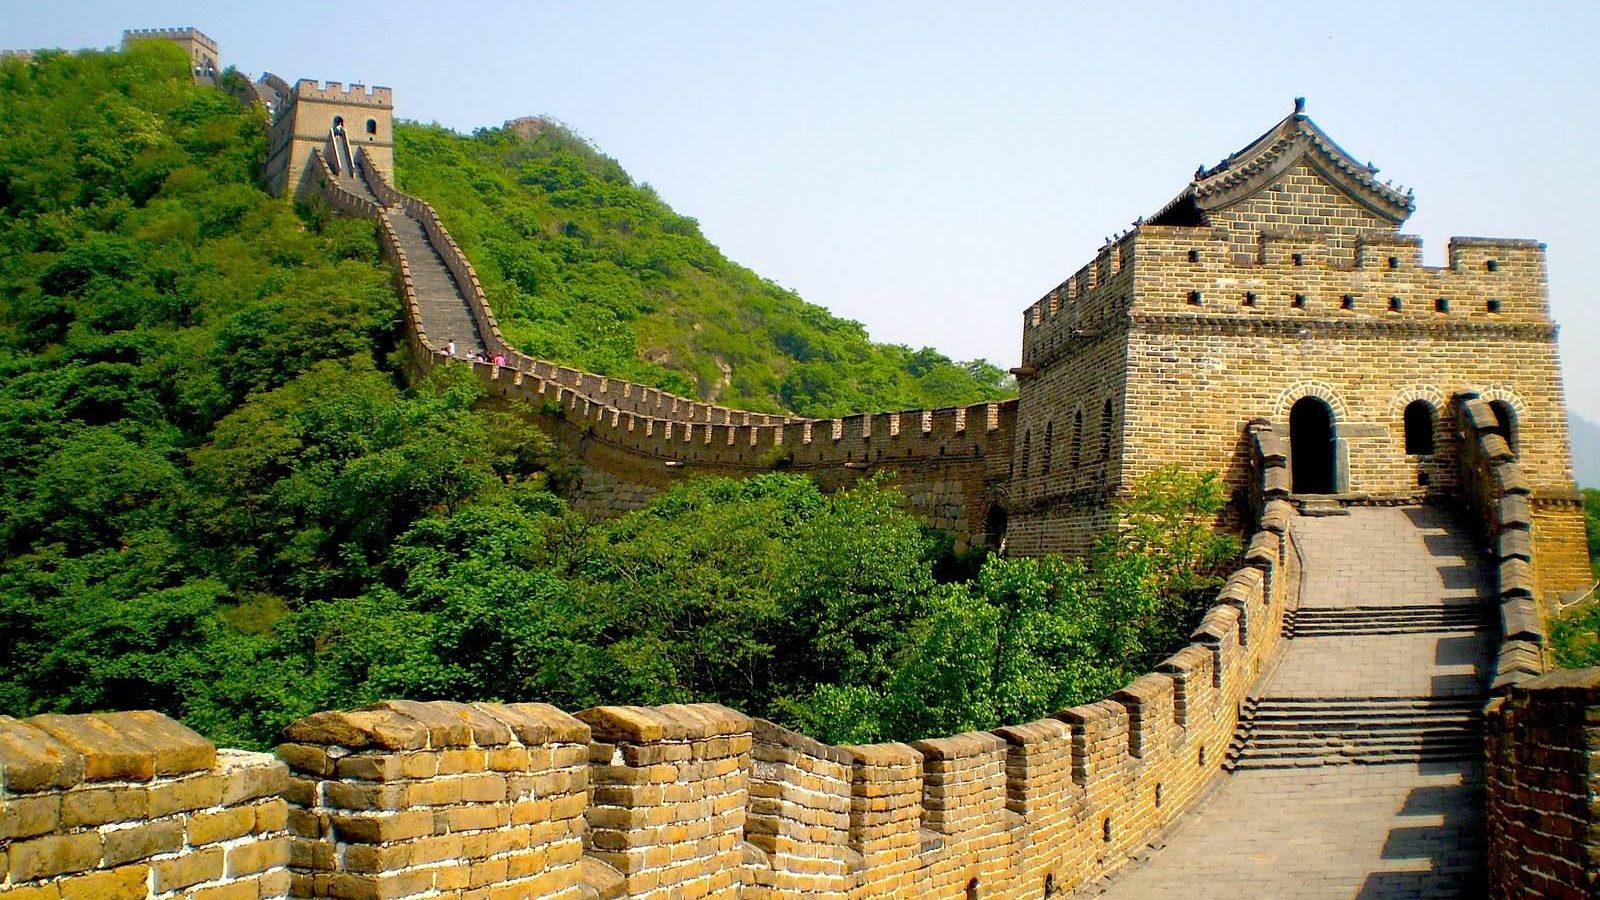 llevar el carnet para visitar la muralla china